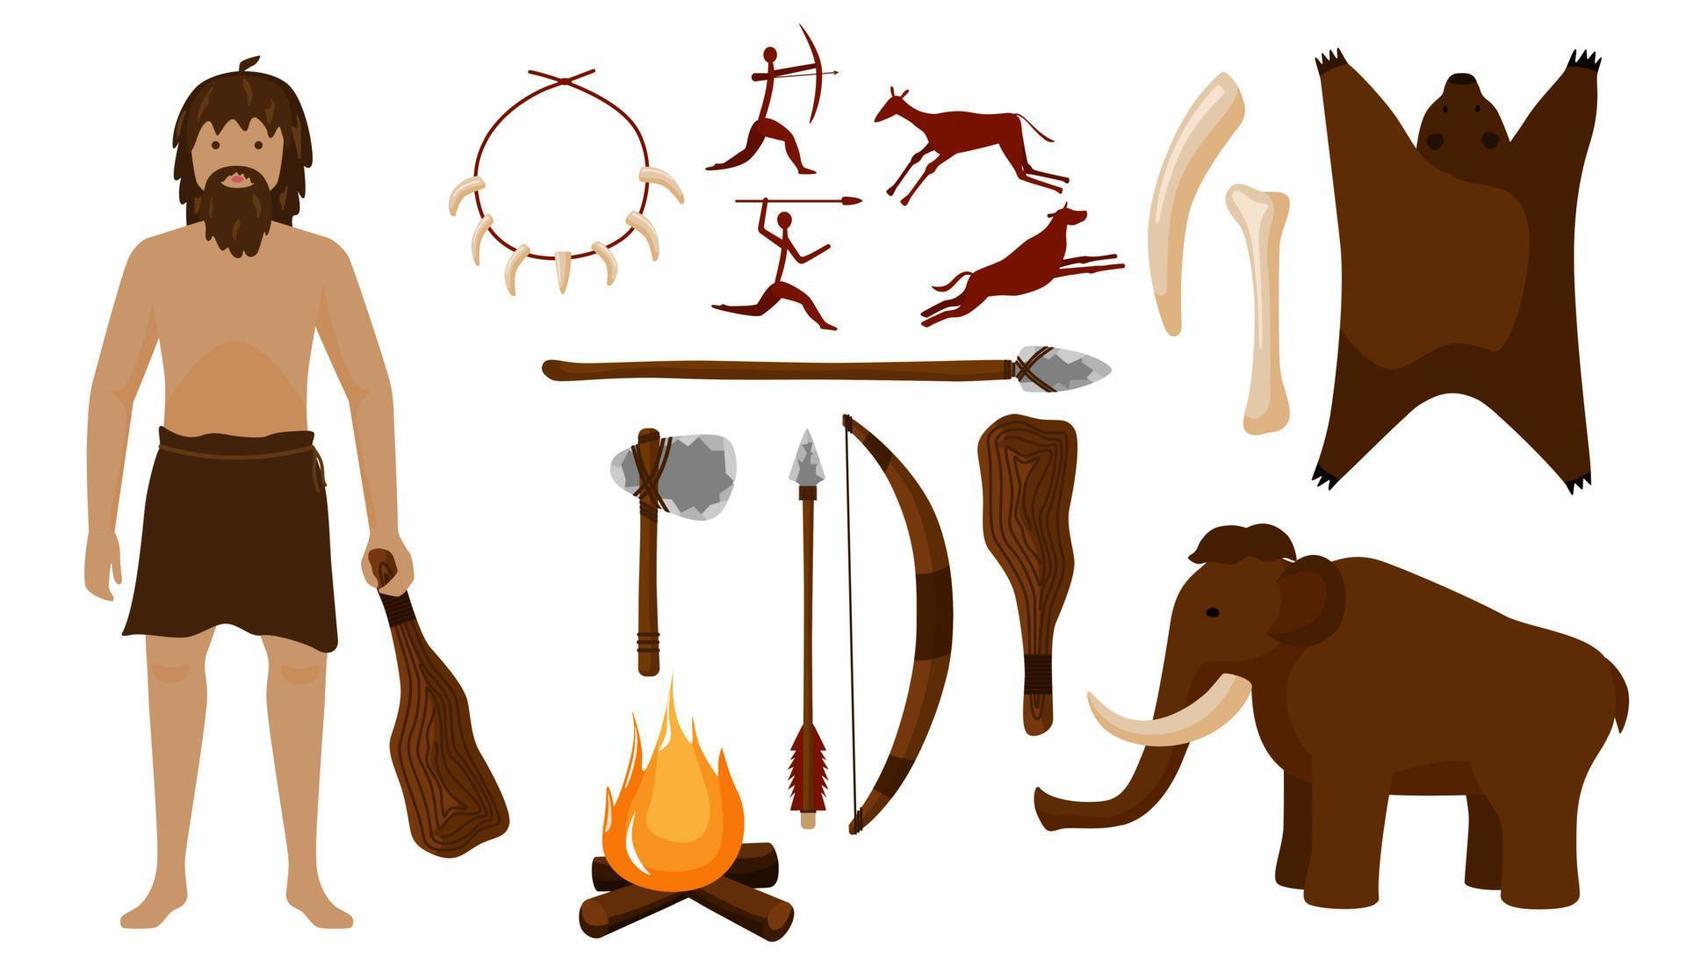 definir neandertal. ferramentas diferentes para martelo de homem das cavernas, machado, lança, arco, flecha, vara, colar, osso, fogueira, animal, mamute. vetor